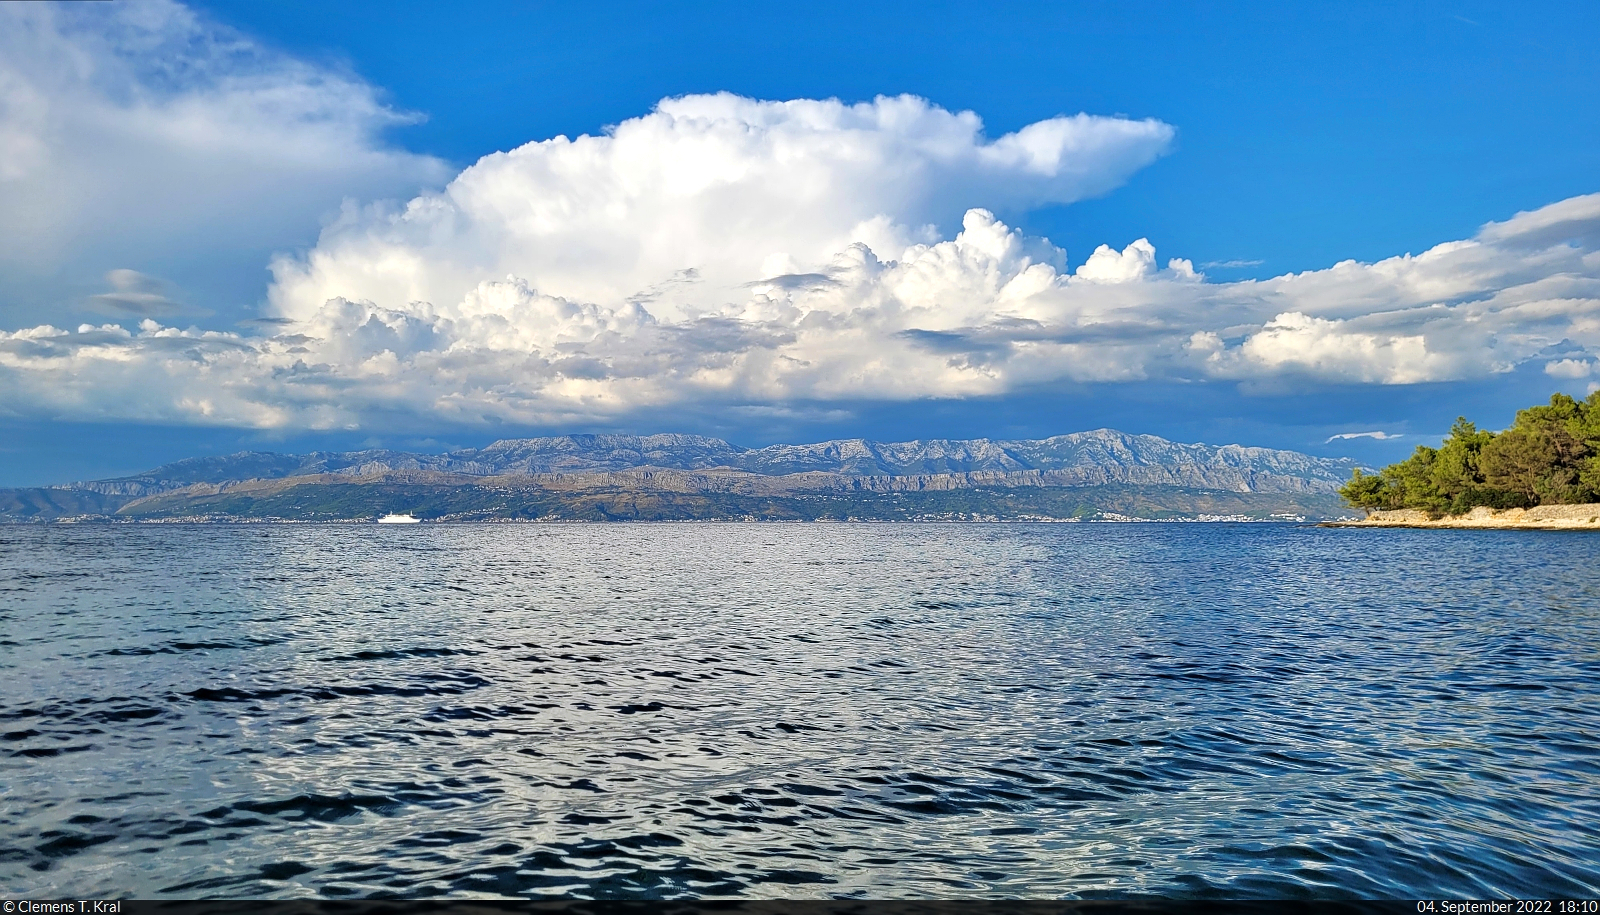 Von Supetar auf der Insel Brač (HR) beobachtet, braut sich über dem Gebirge auf dem Festland bei Split ein Gewitter zusammen. Glücklicherweise blieb es jedoch da, wo es herkam.

🕓 4.9.2022 | 18:10 Uhr